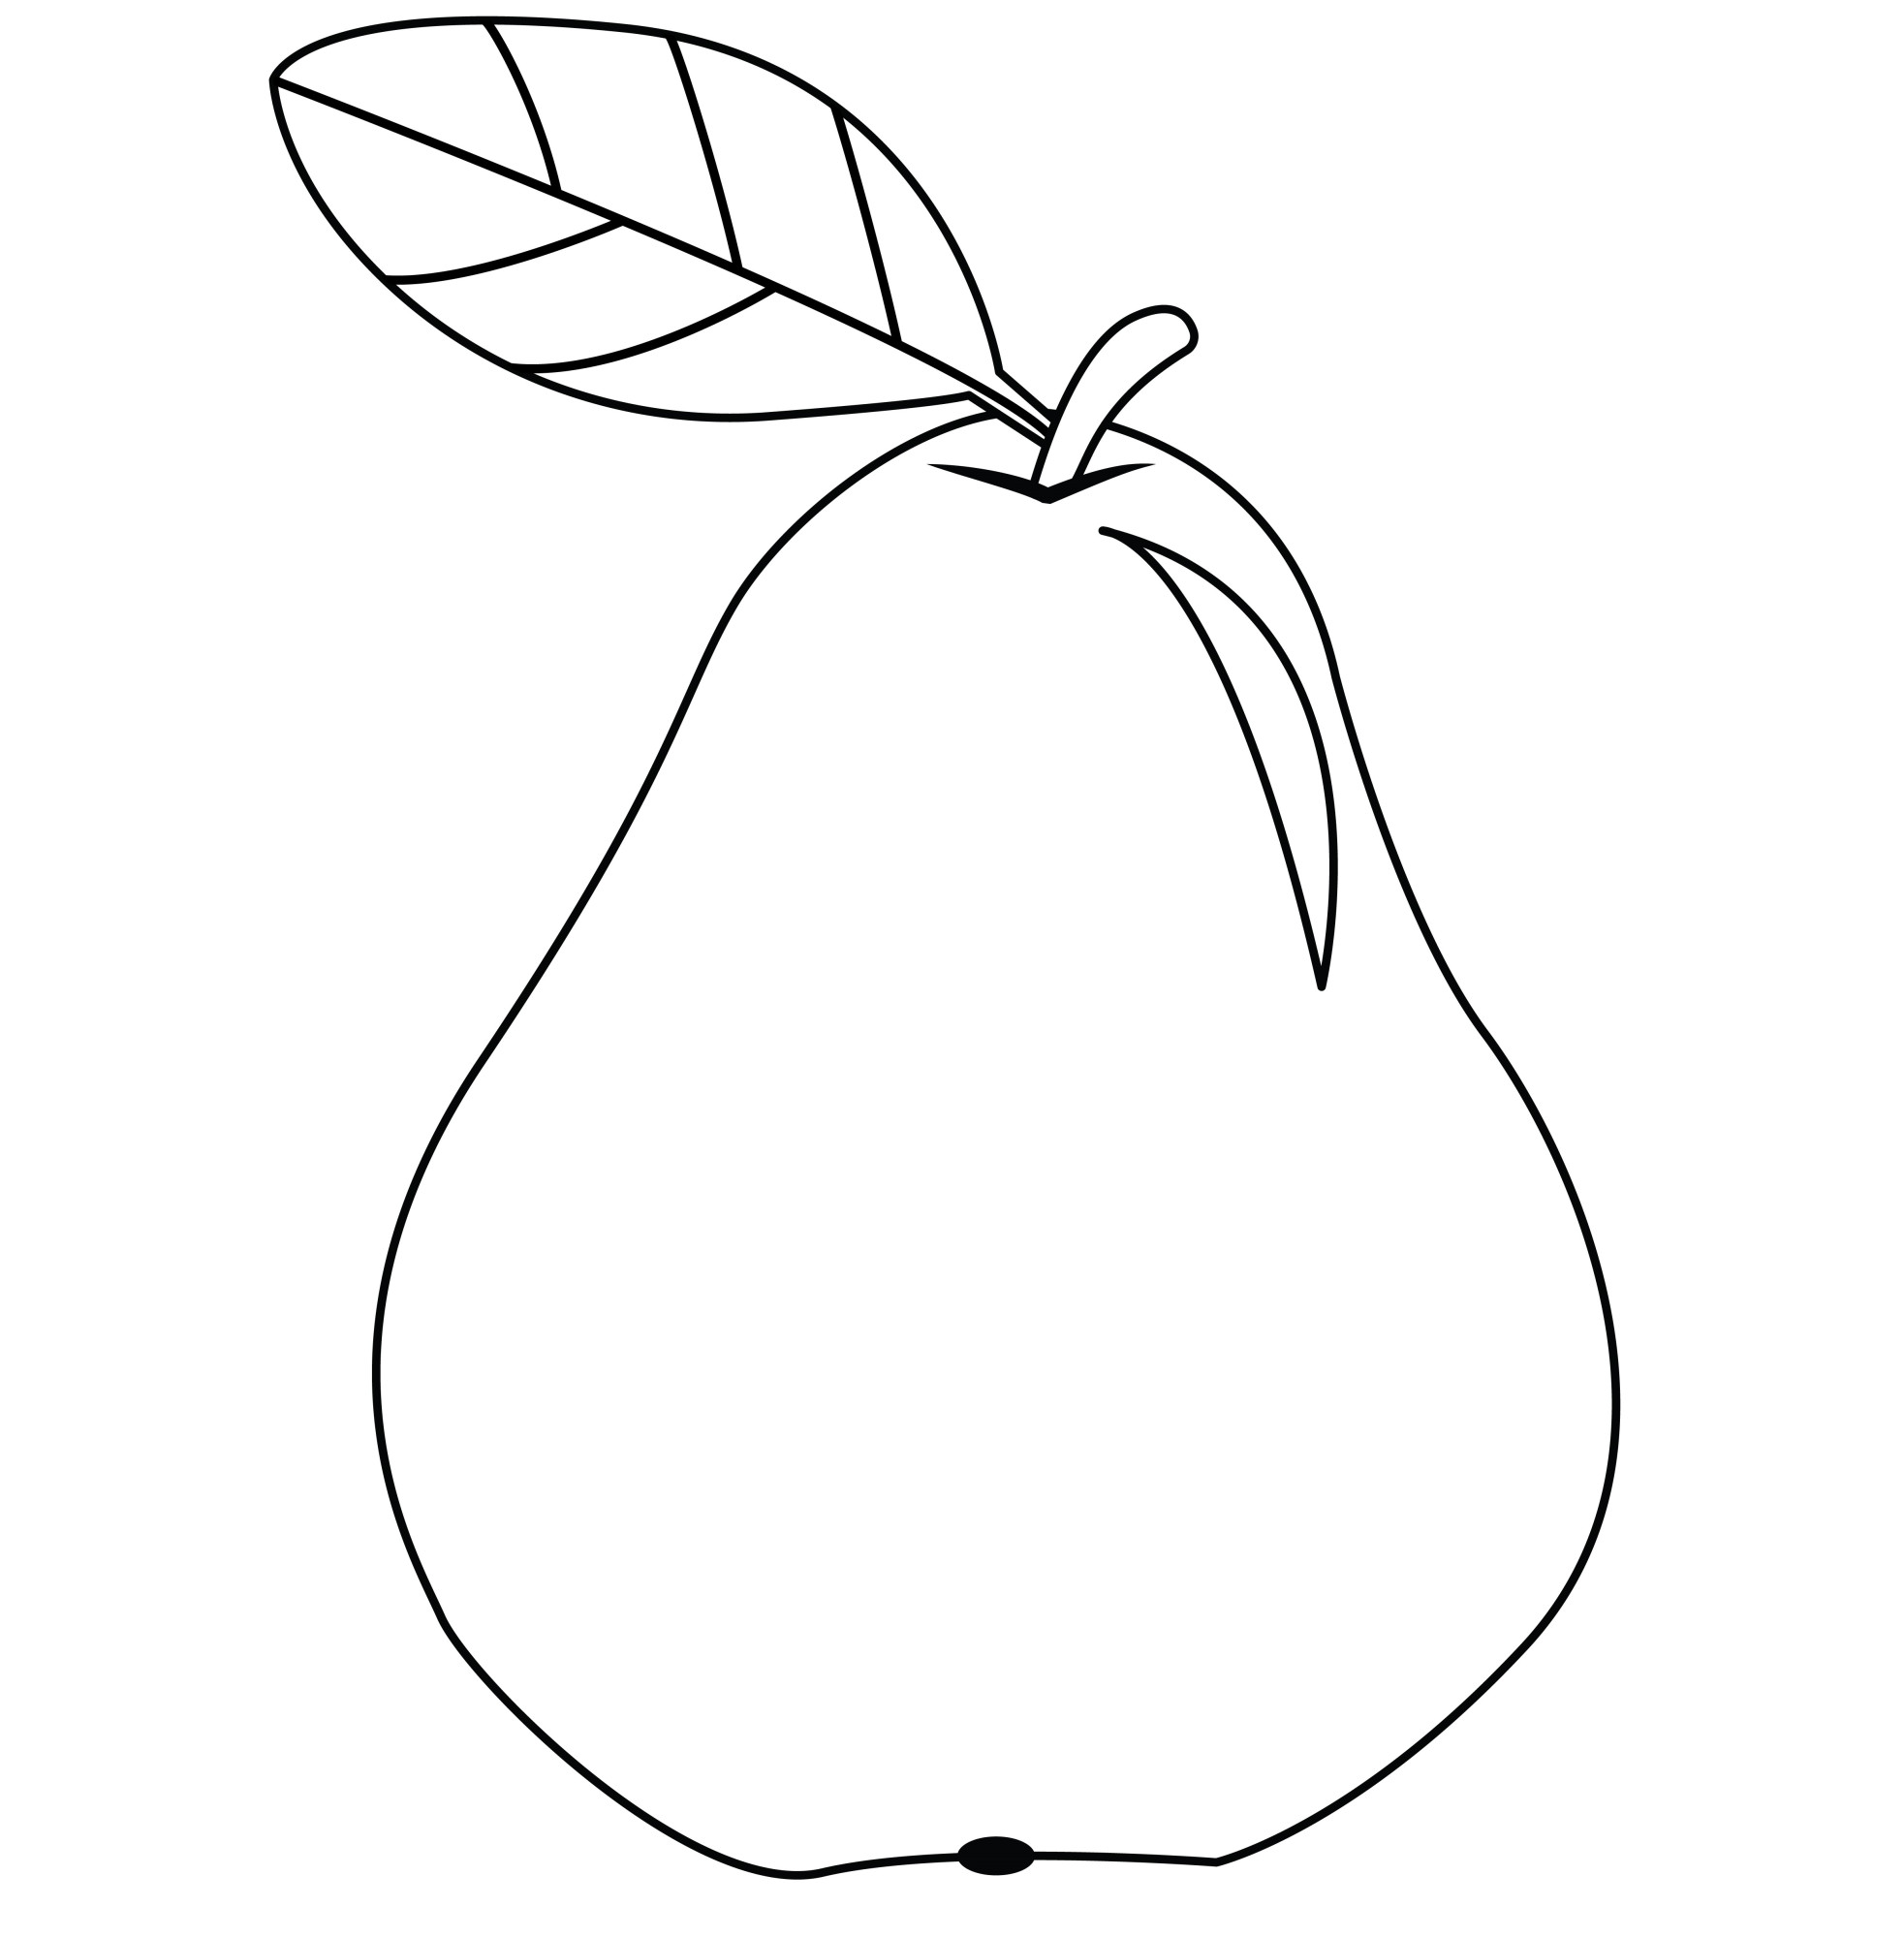 Раскраска для детей: спелая груша с листиком